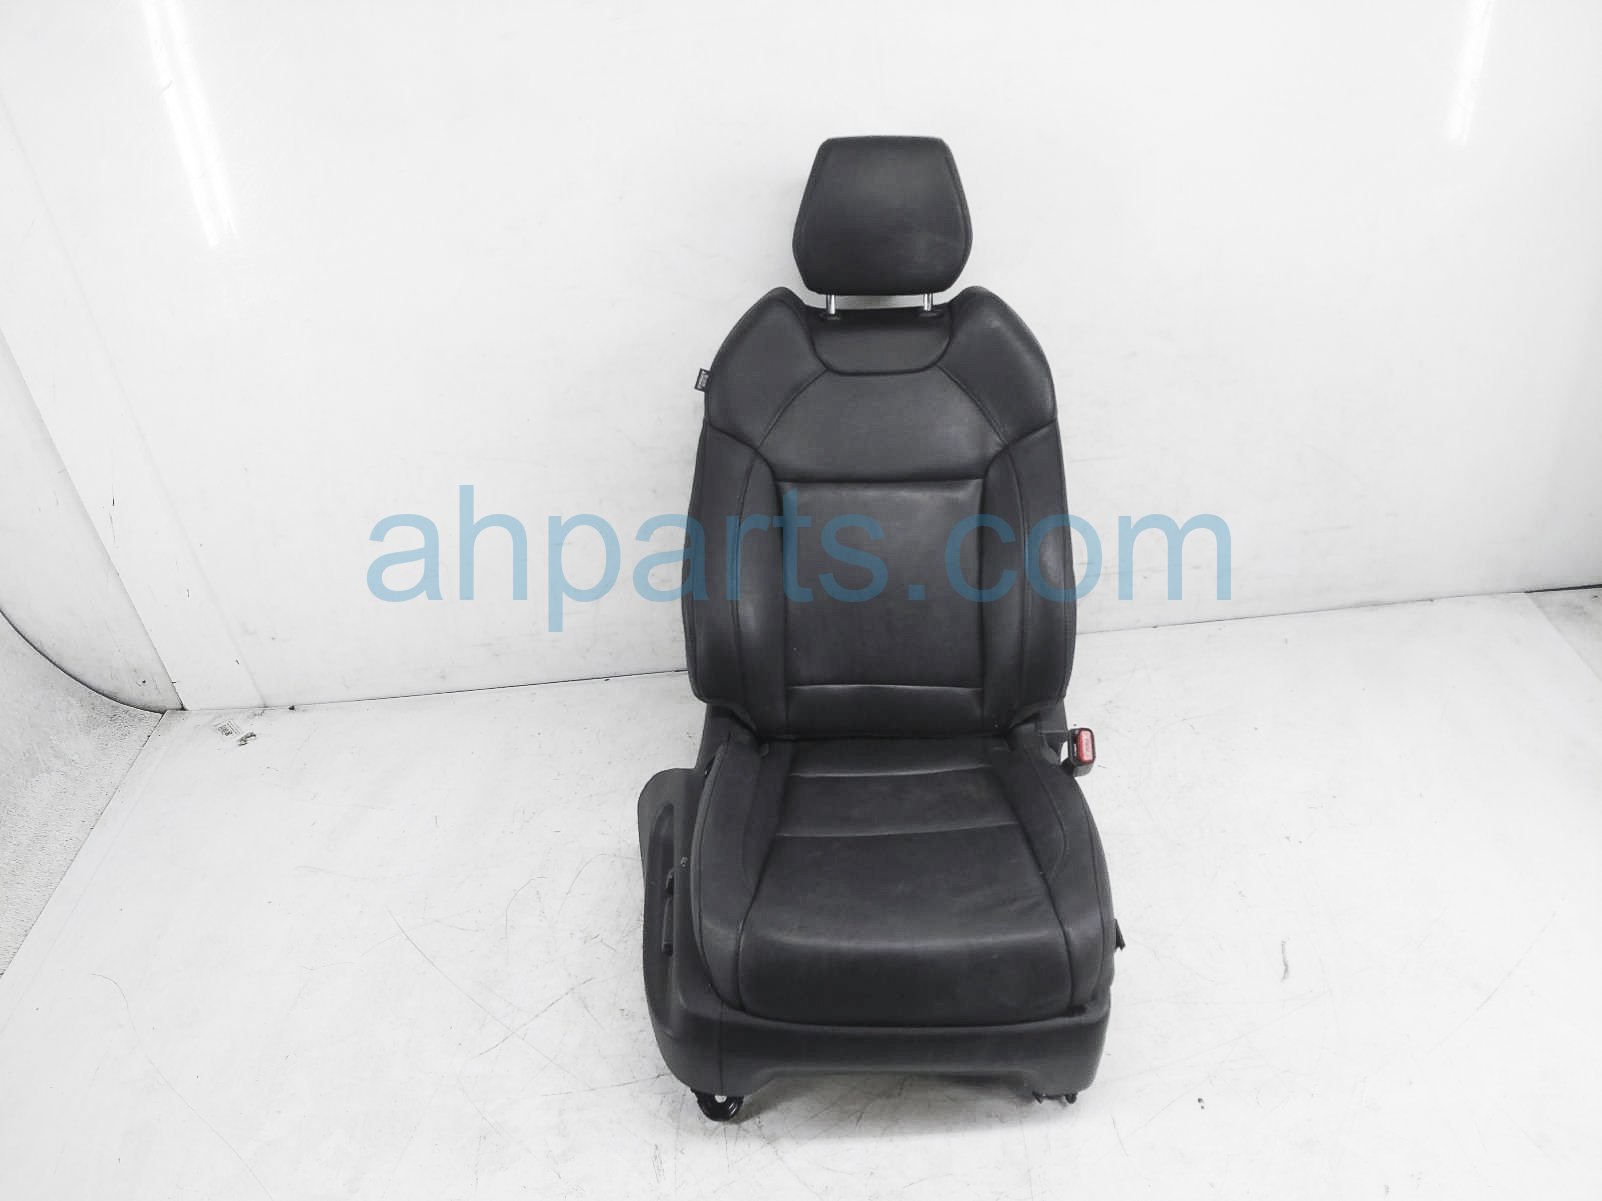 $149 Acura FR/RH SEAT - BLACK - W/O AIRBAG